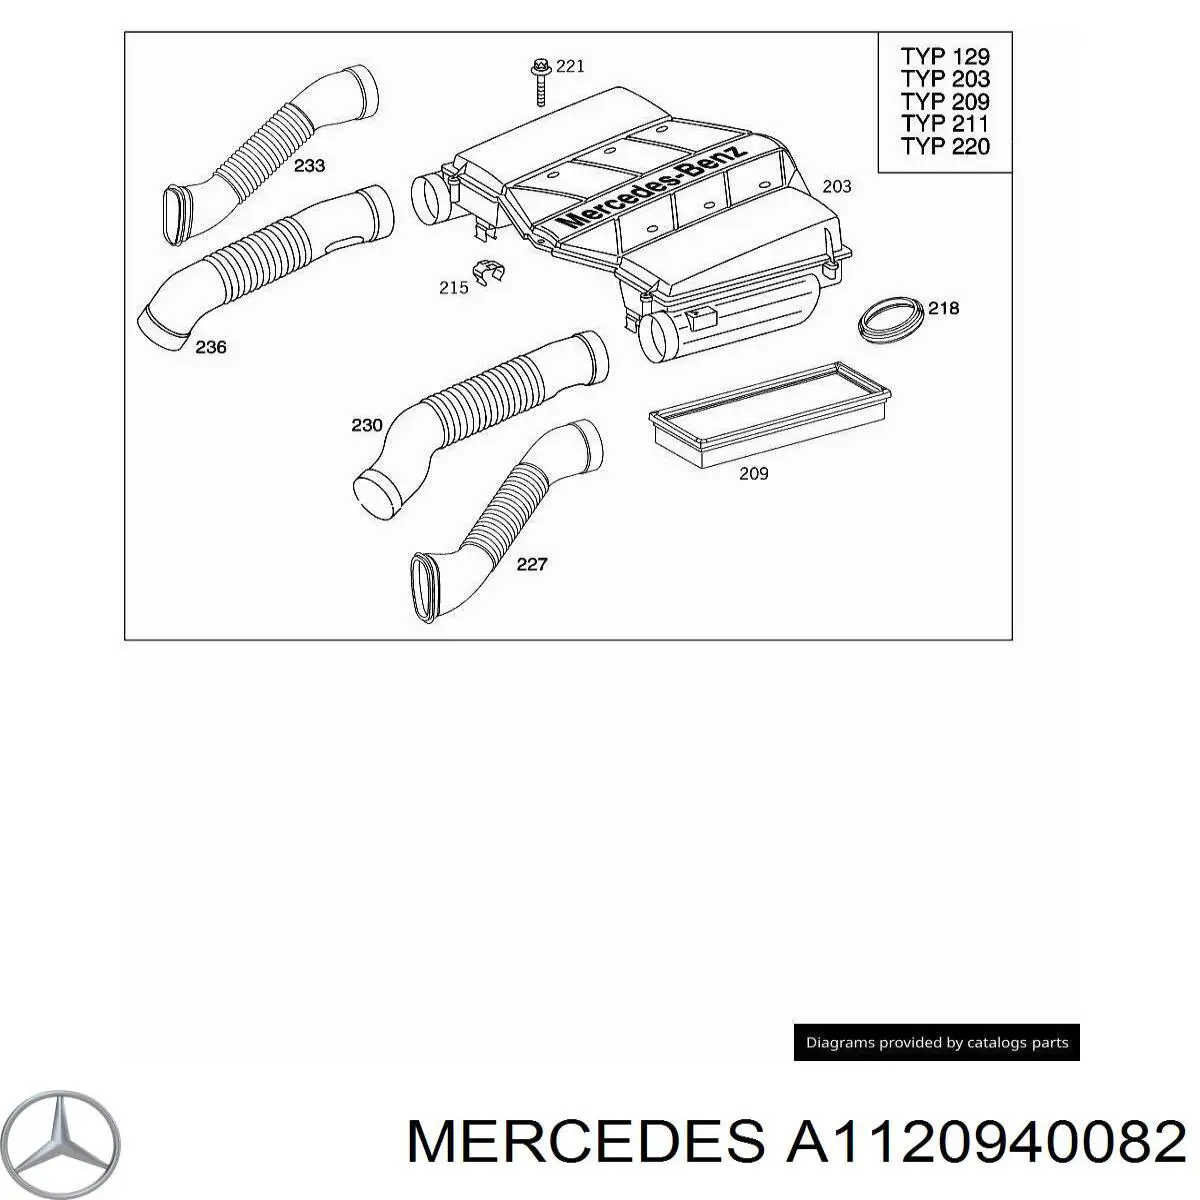 A1130940082 Mercedes воздухозаборник воздушного фильтра